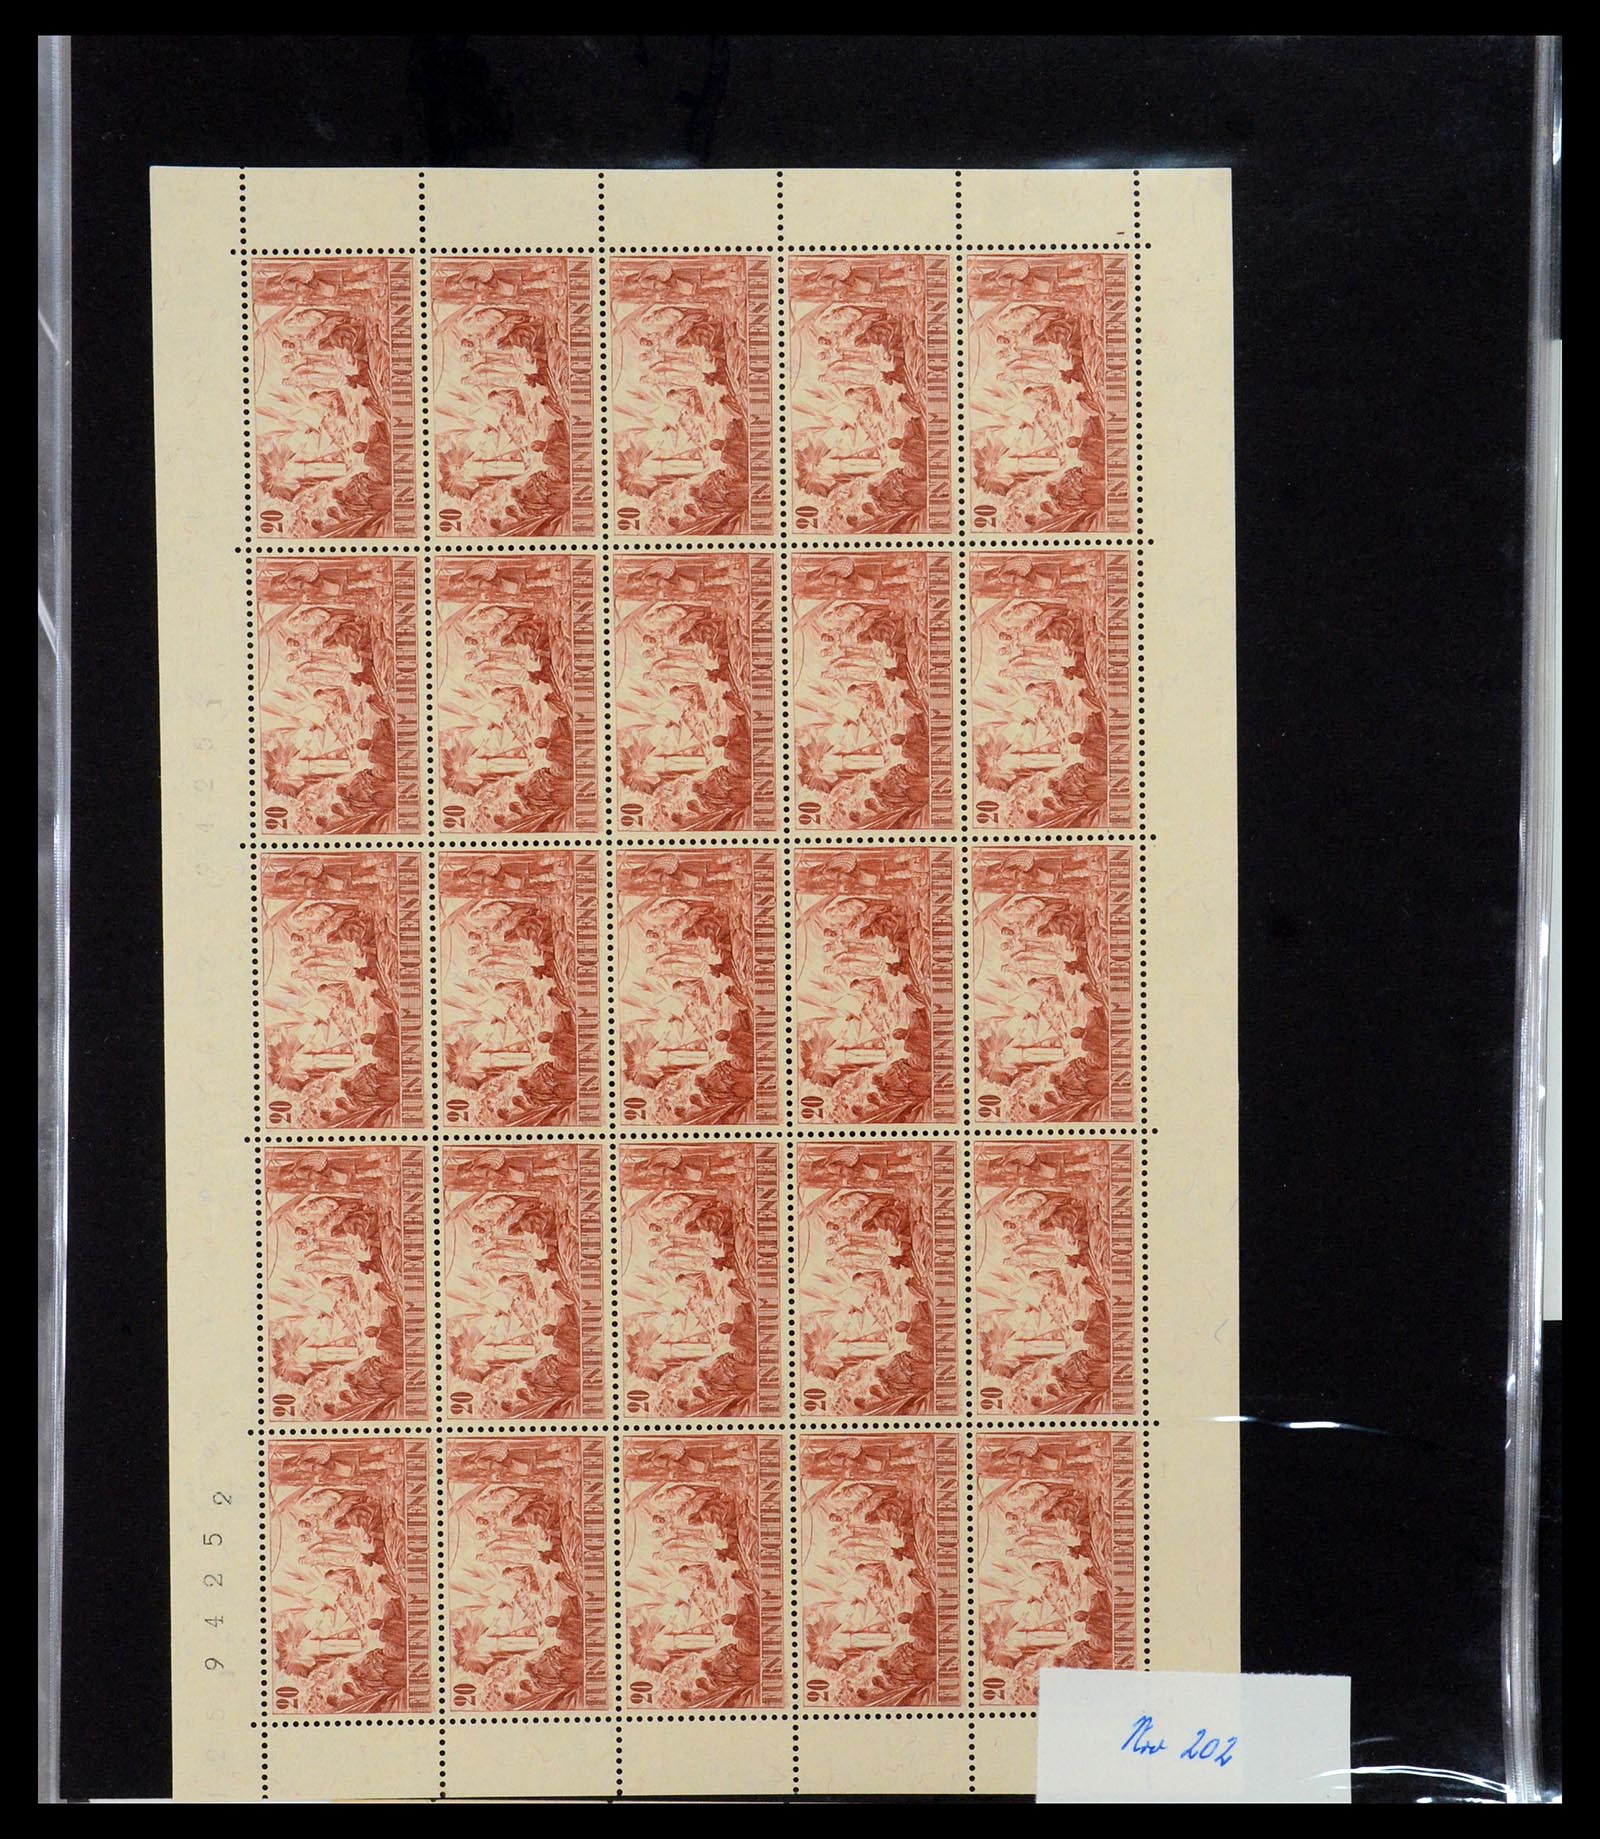 36280 019 - Stamp collection 36280 Liechtenstein souvenir sheets and sheetlets 1934-